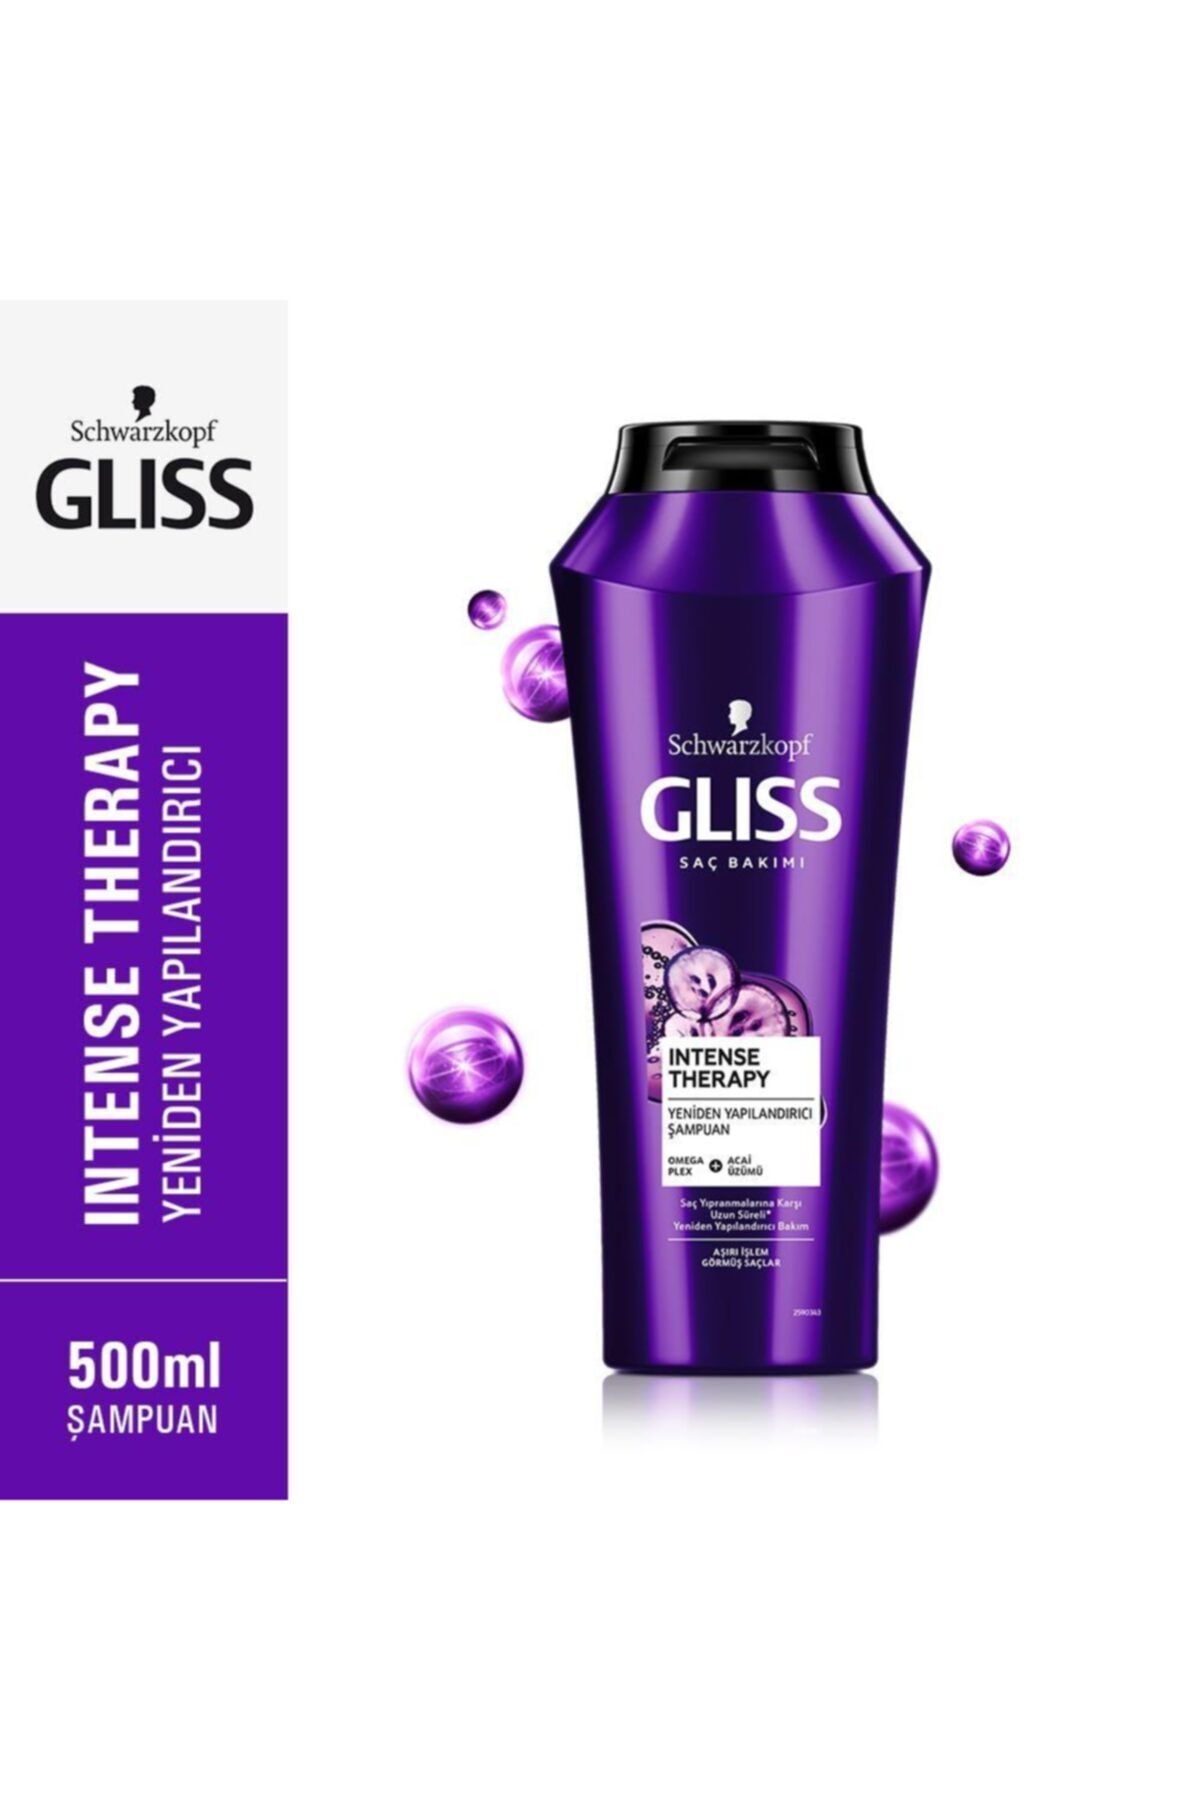 Gliss Intense Therapy Yeniden Yapılandırıcı Şampuan - Omega Plex Ve Acai Üzümü Ile 500 ml